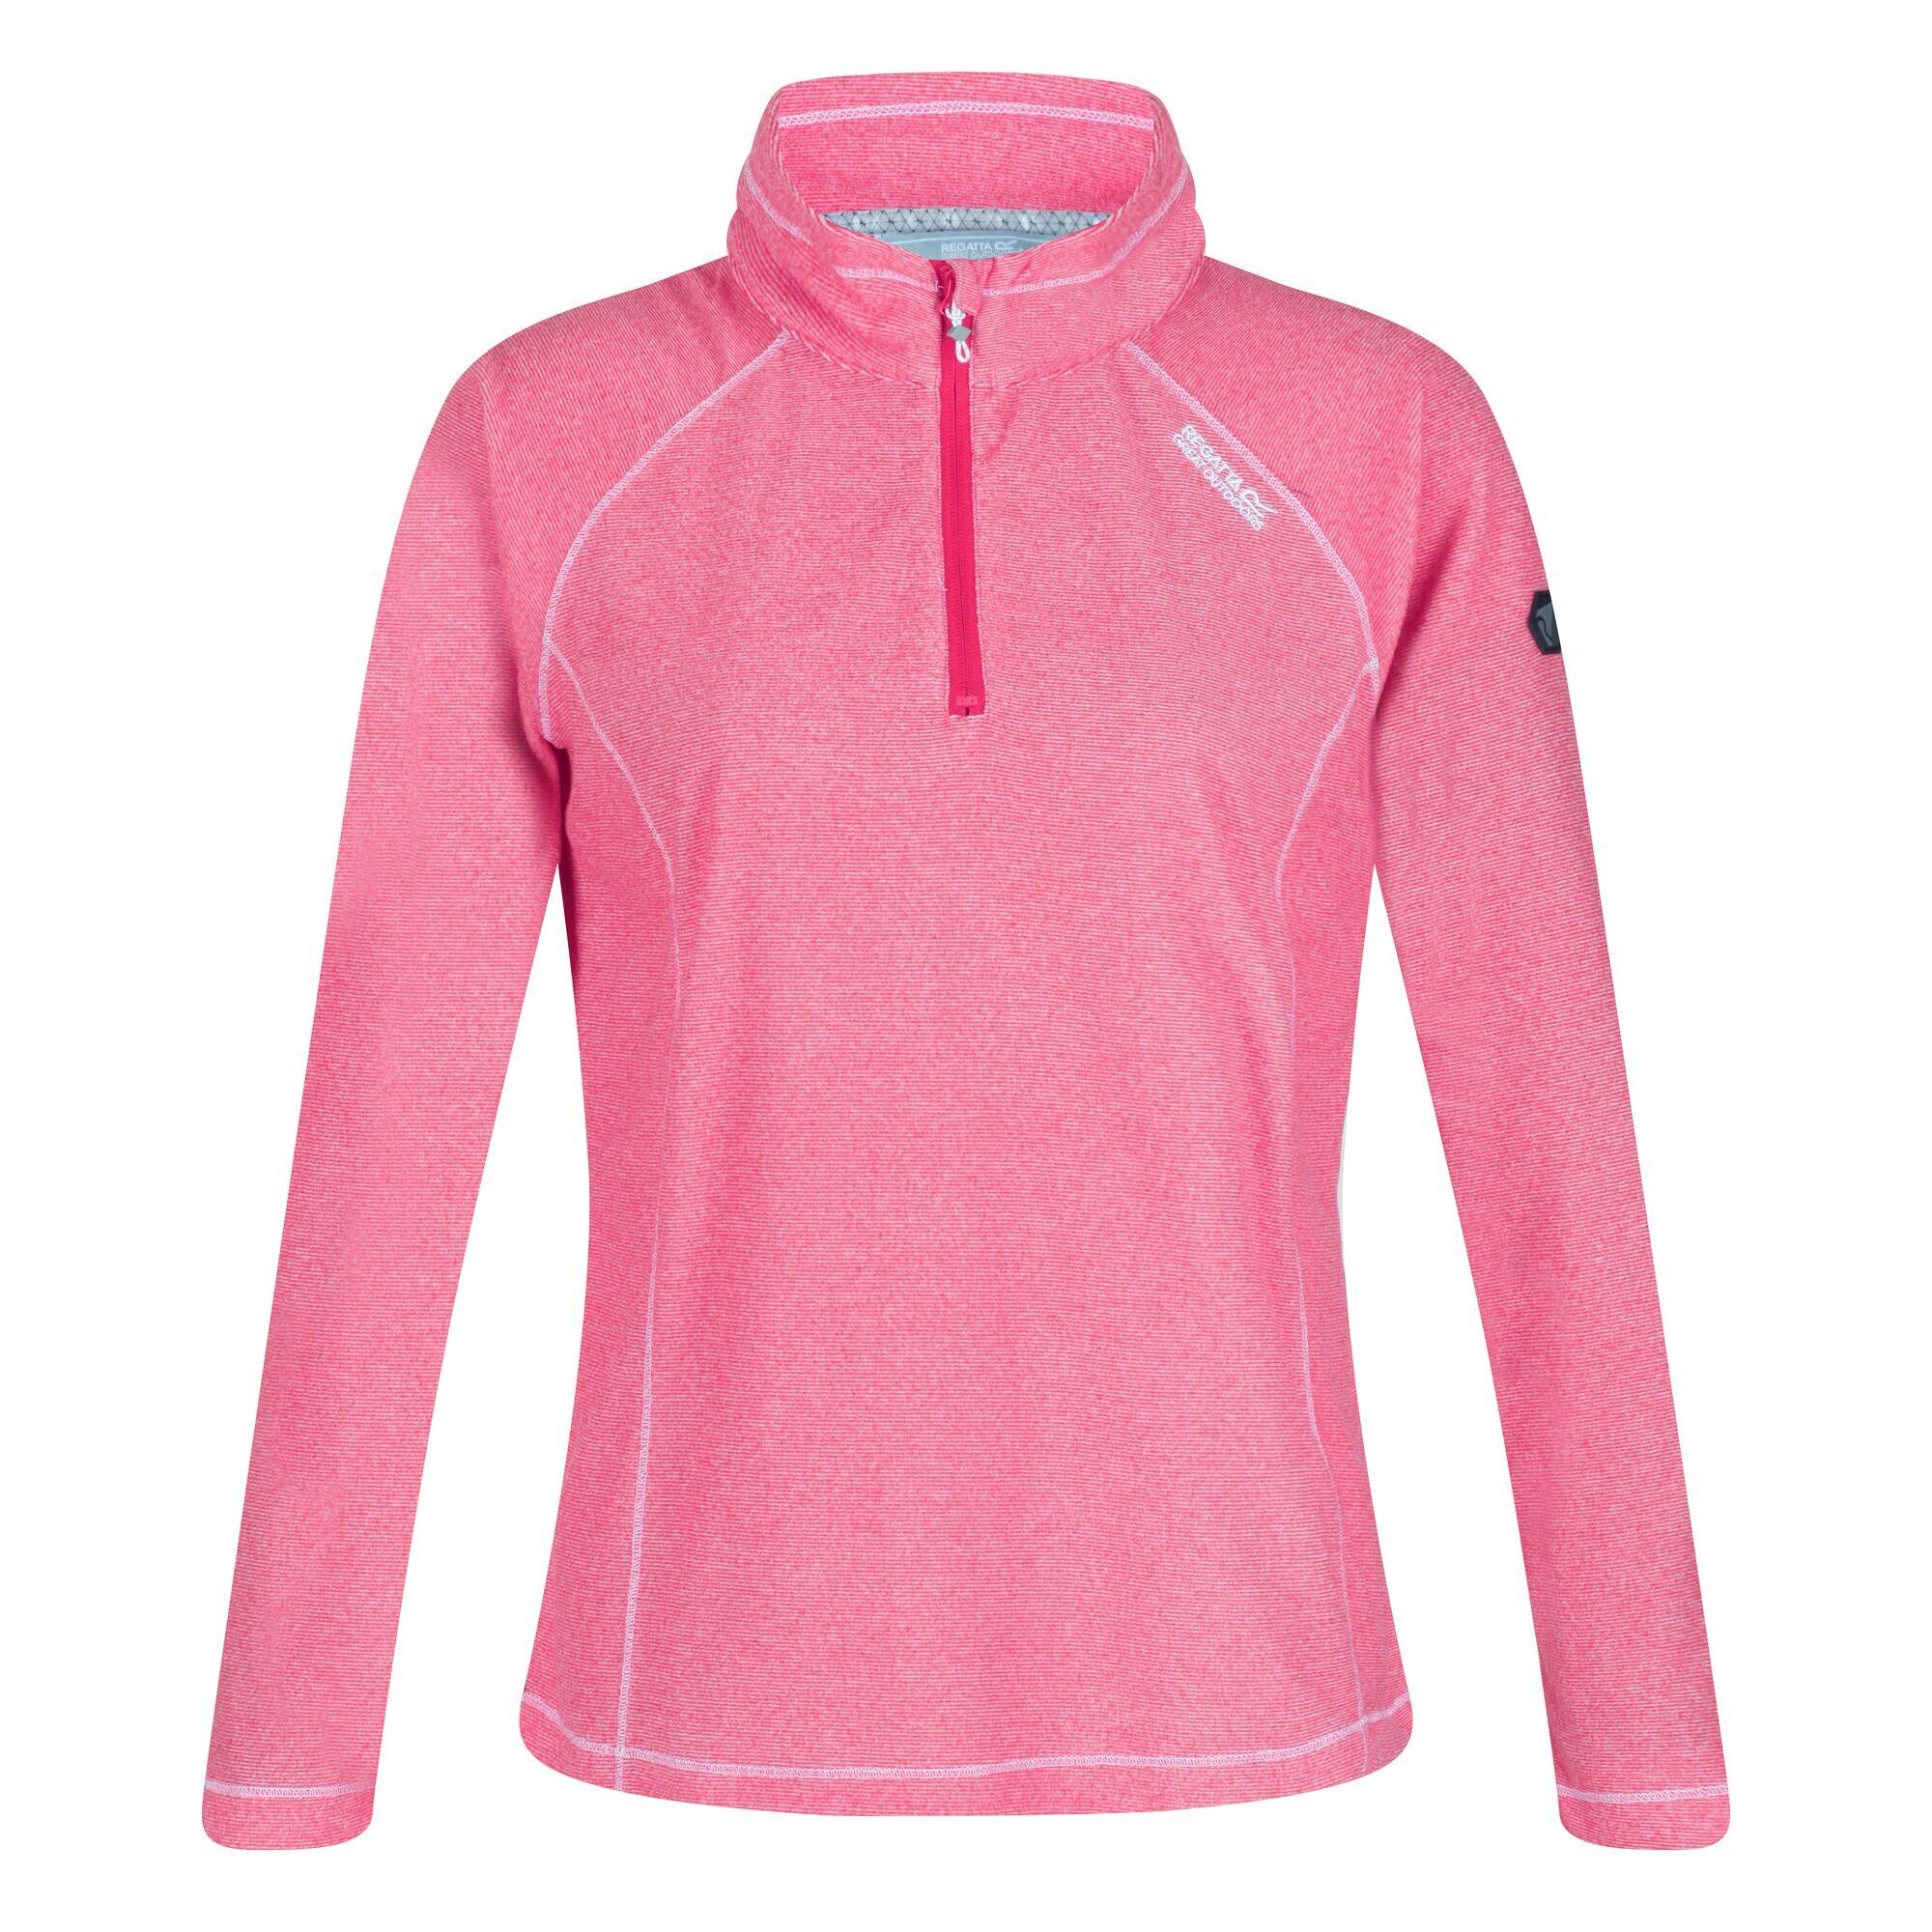 REGATTA Womens/Ladies Montes Lightweight Fleece Top (Rethink Pink/White)